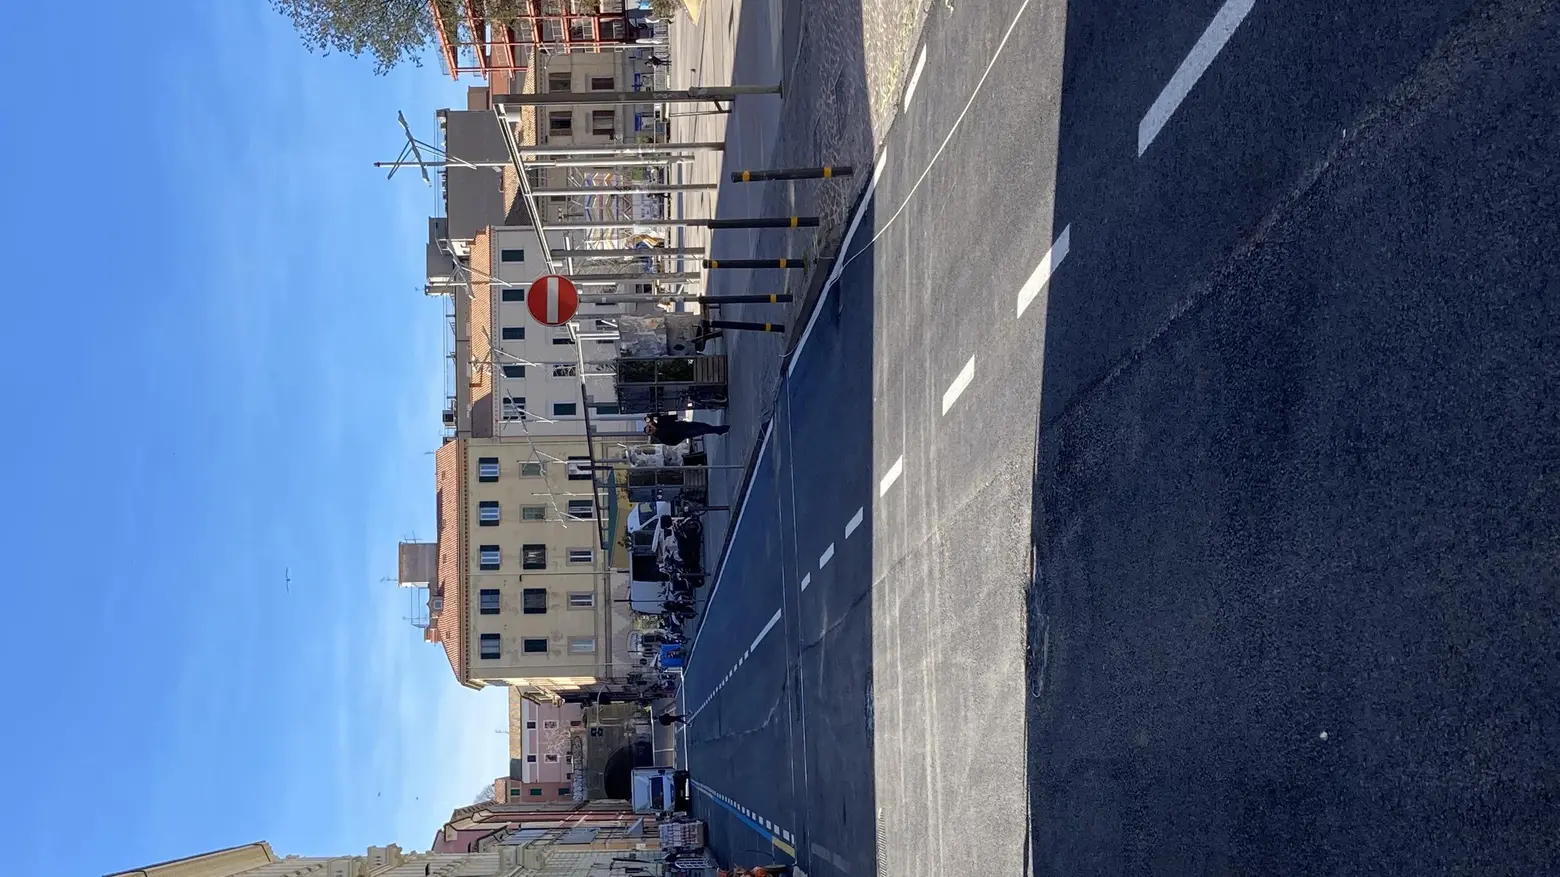 Nuovi asfalti in centro  Via San Martino cambia pelle  Riaperta subito al traffico